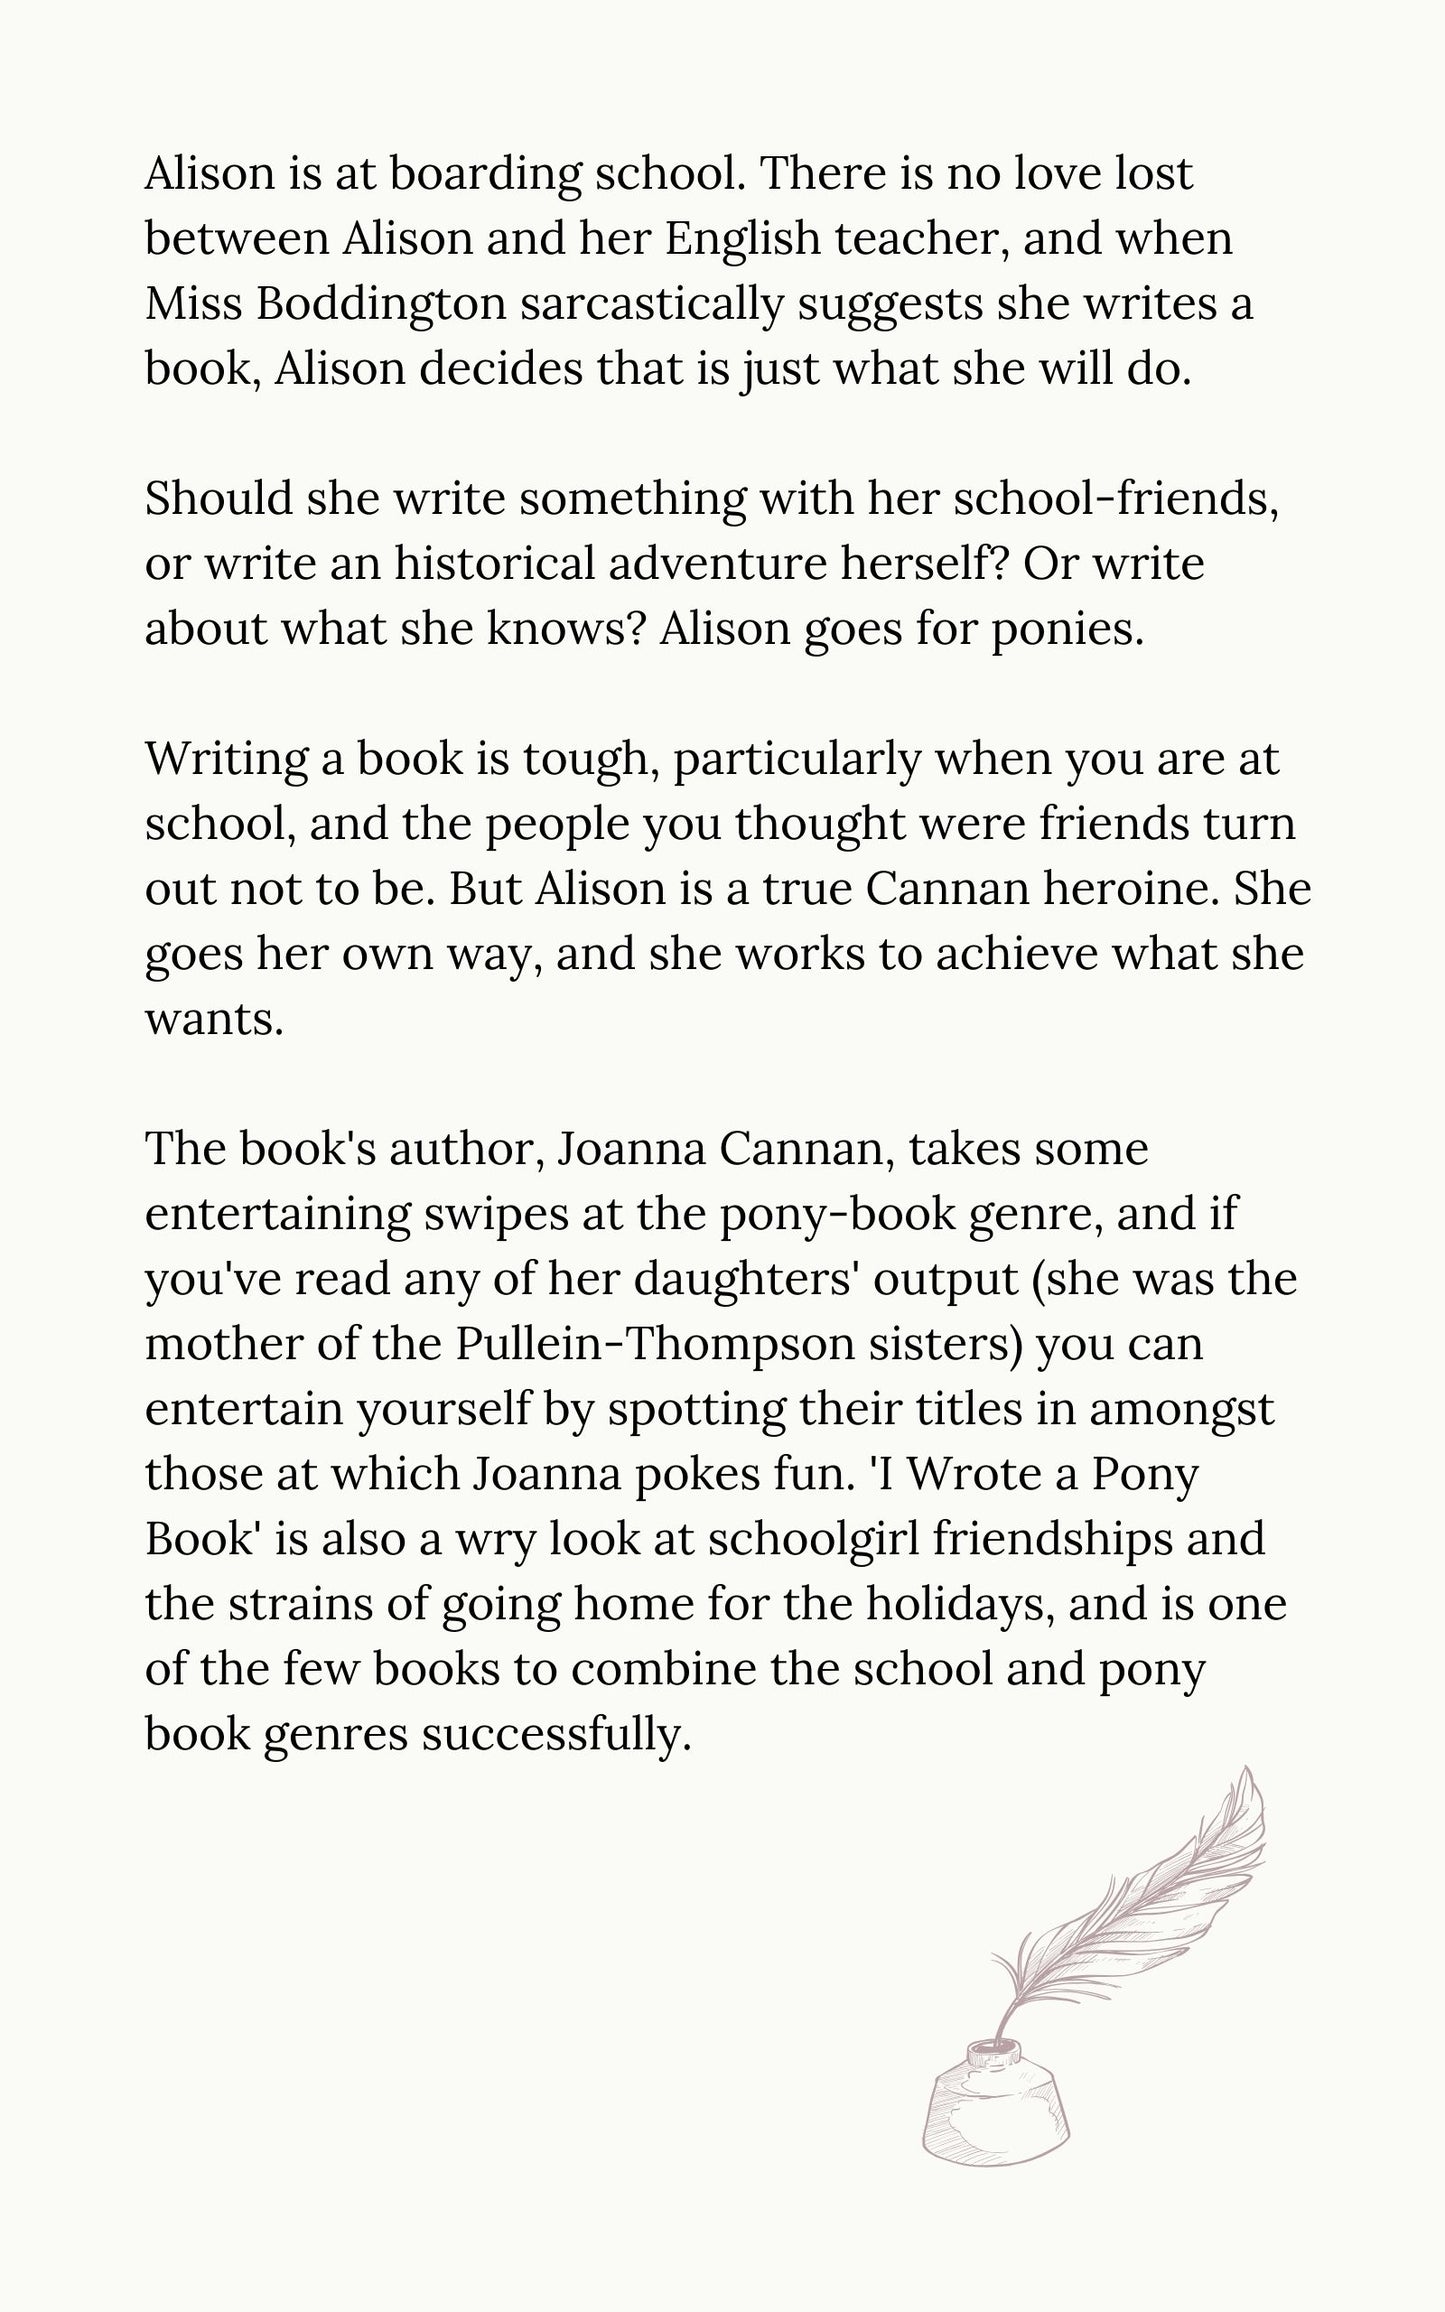 Joanna Cannan: I Wrote a Pony Book (eBook)